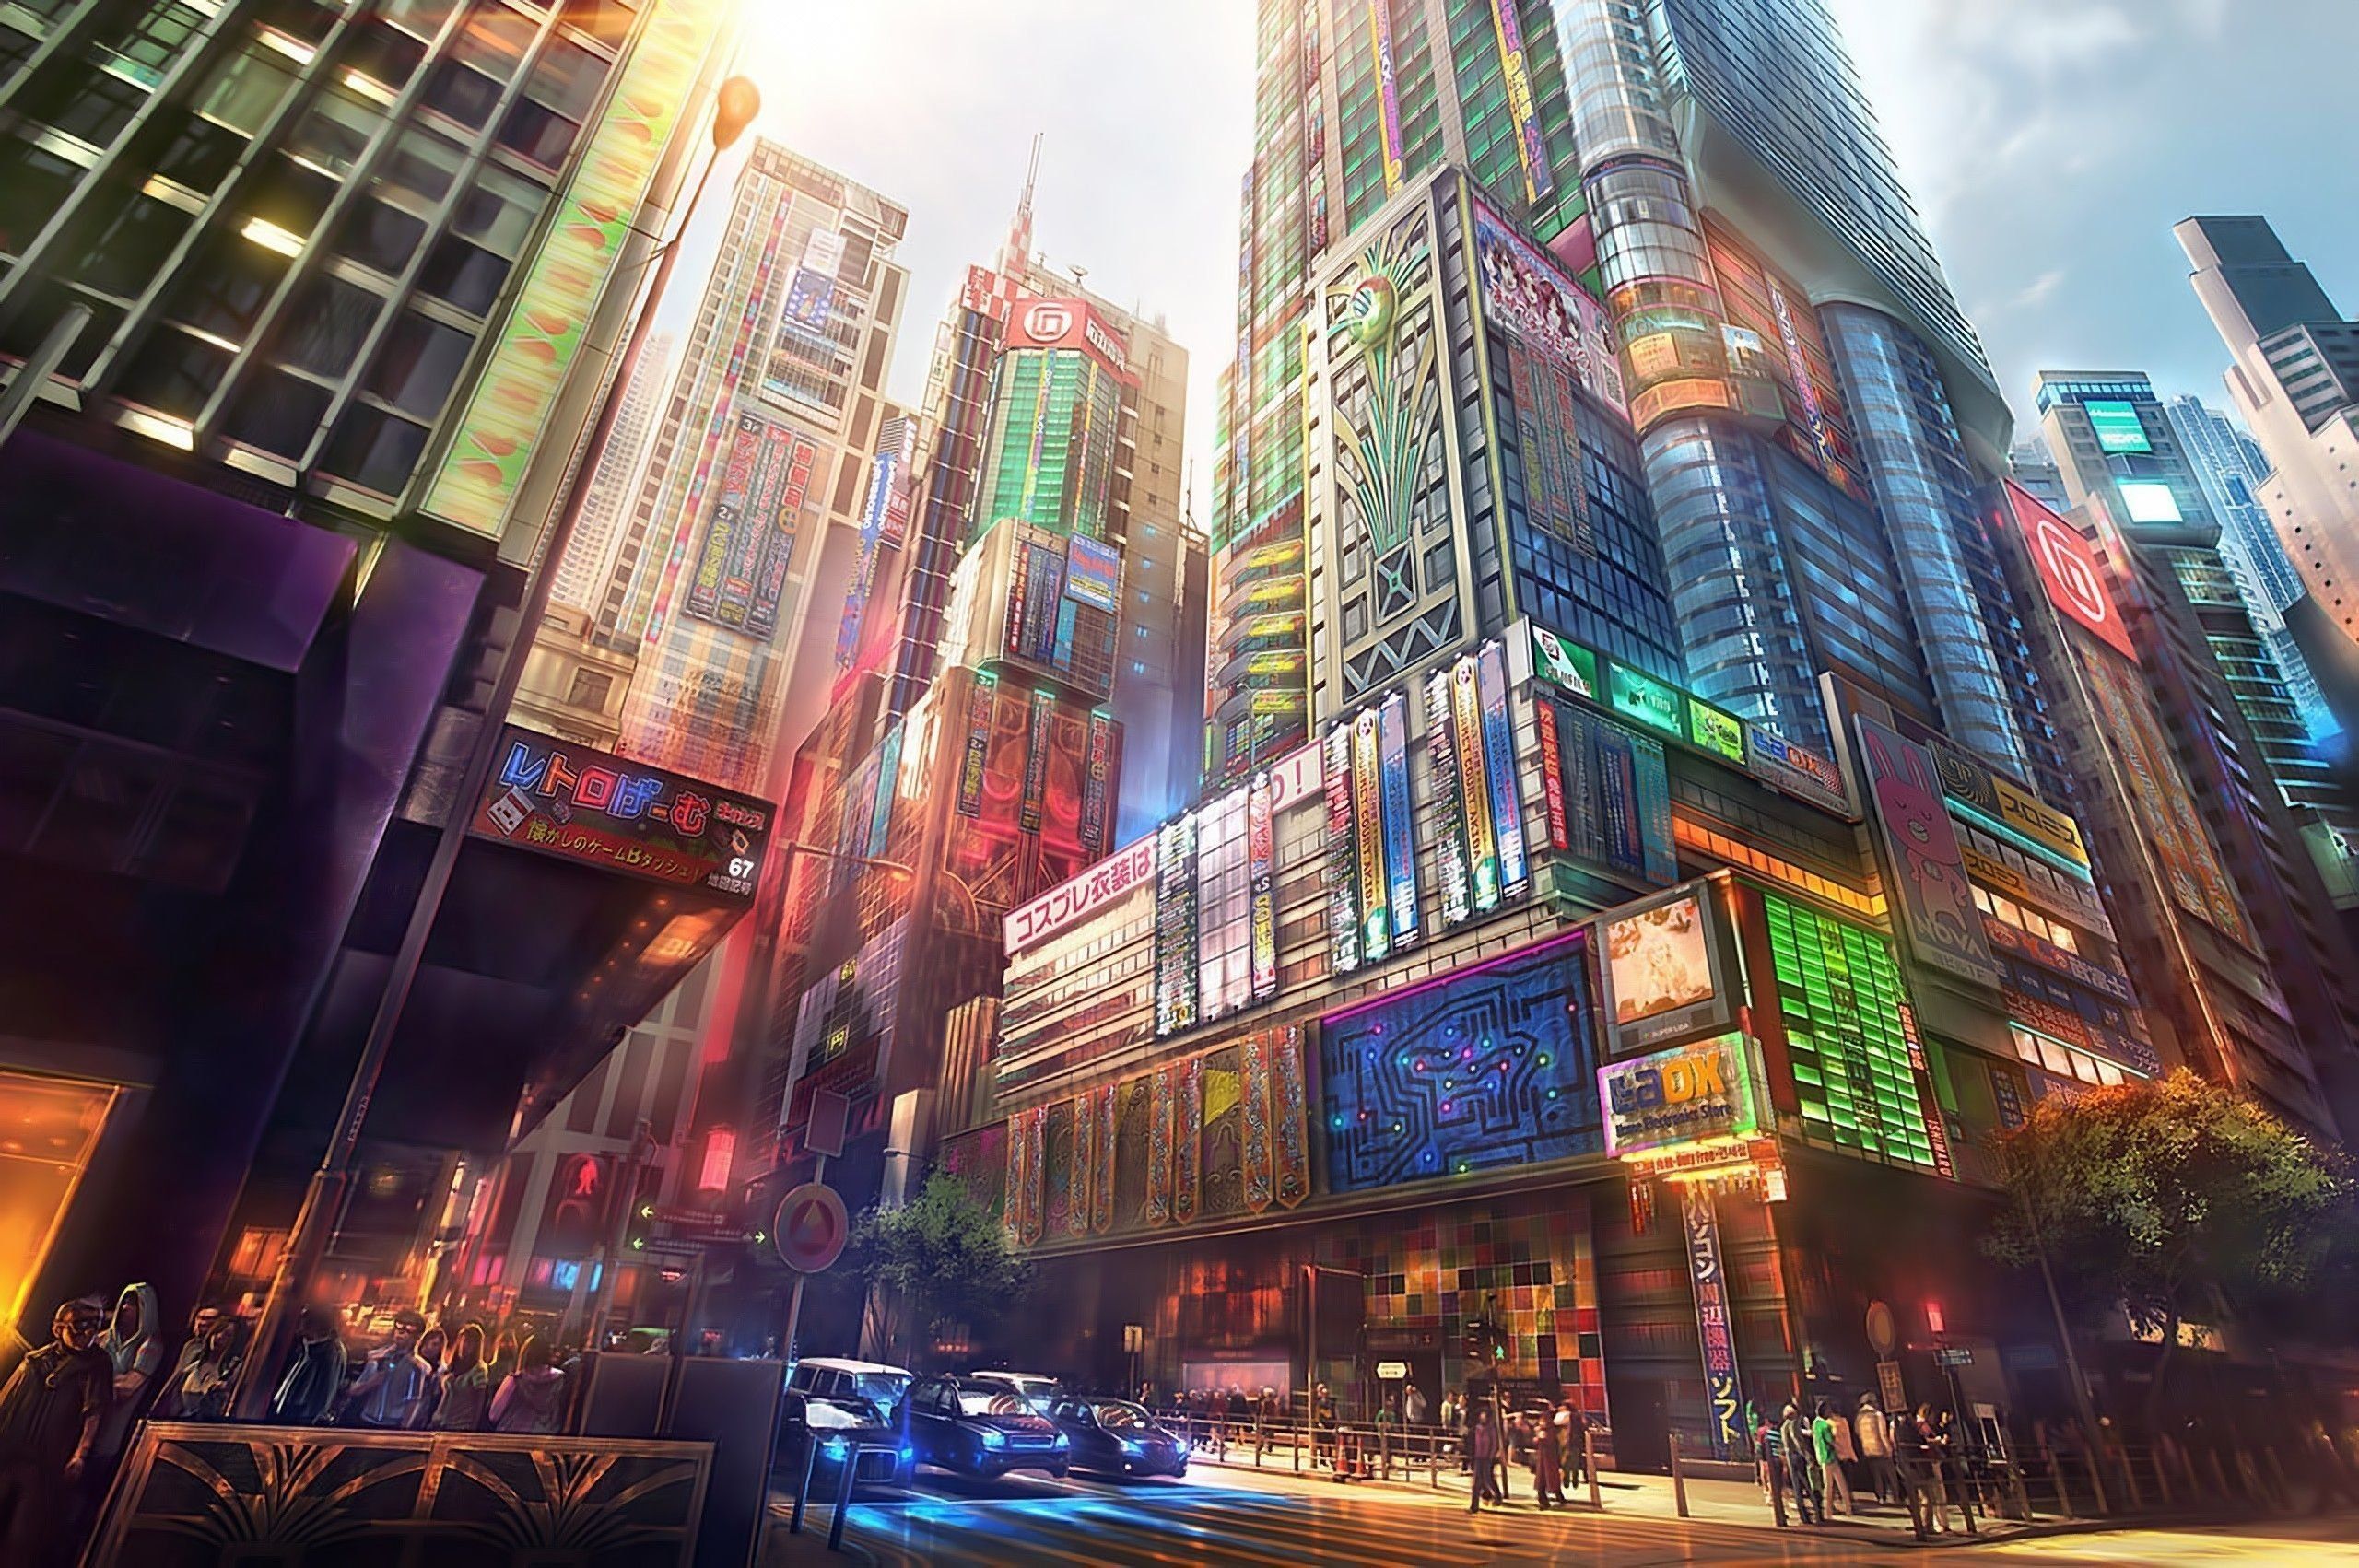 4k Wallpaper Anime City